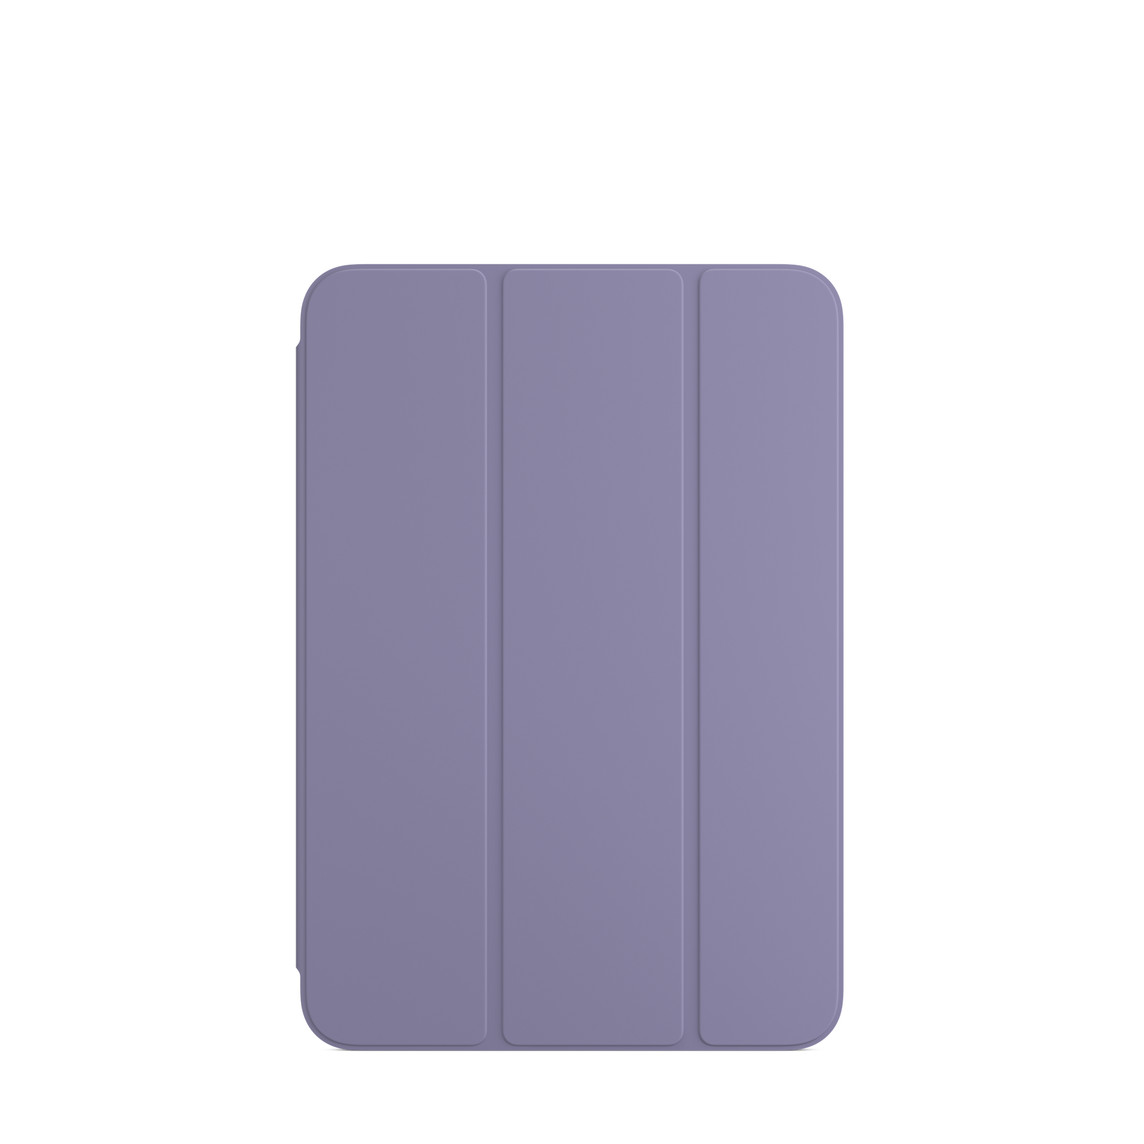 Smart Folio for iPad mini (6th generation) in English Lavender.